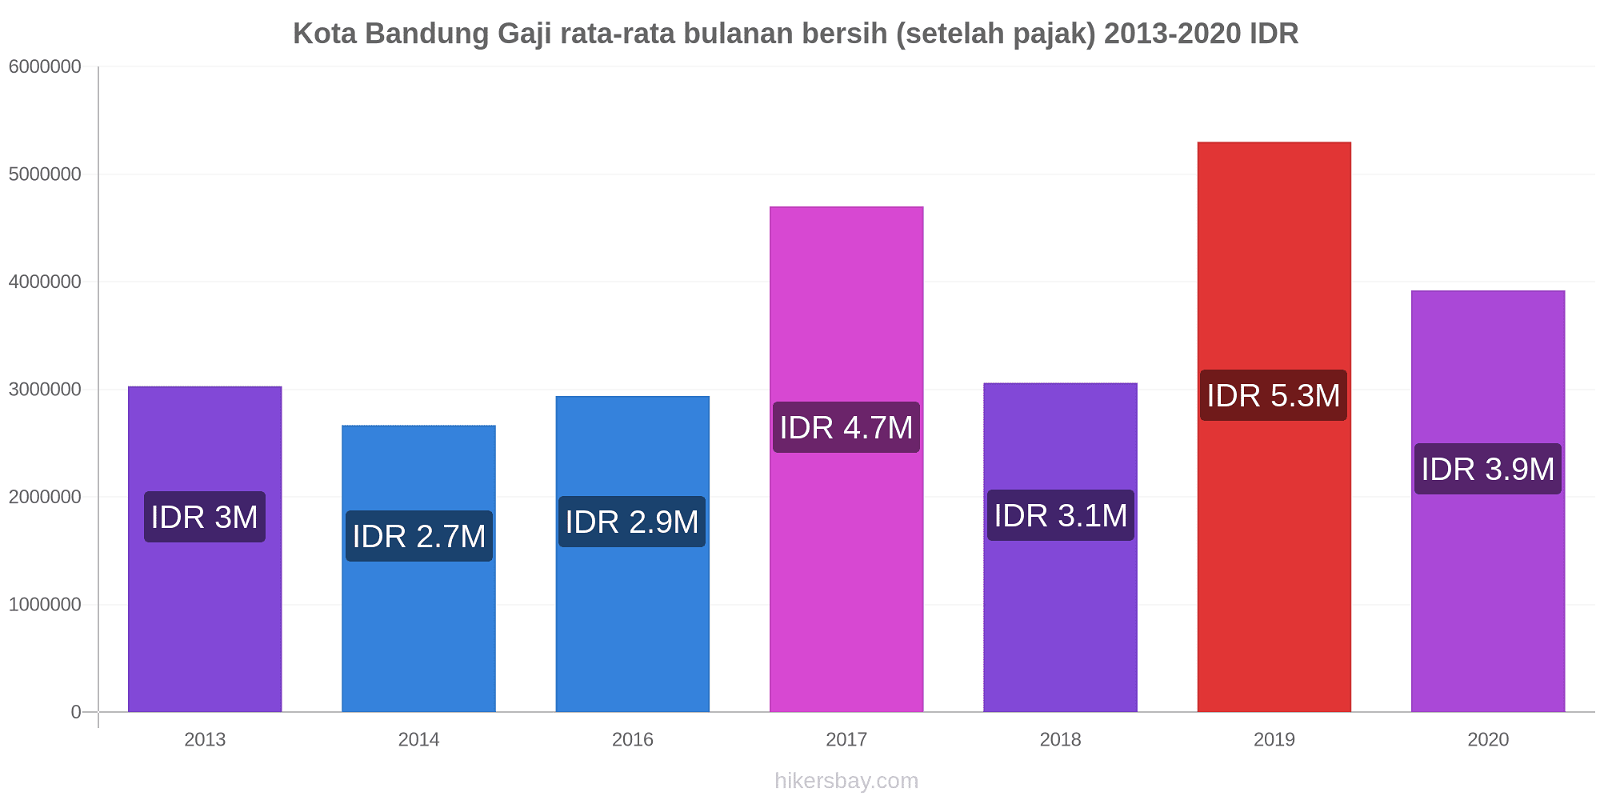 Kota Bandung perubahan harga Gaji rata-rata bulanan bersih (setelah pajak) hikersbay.com